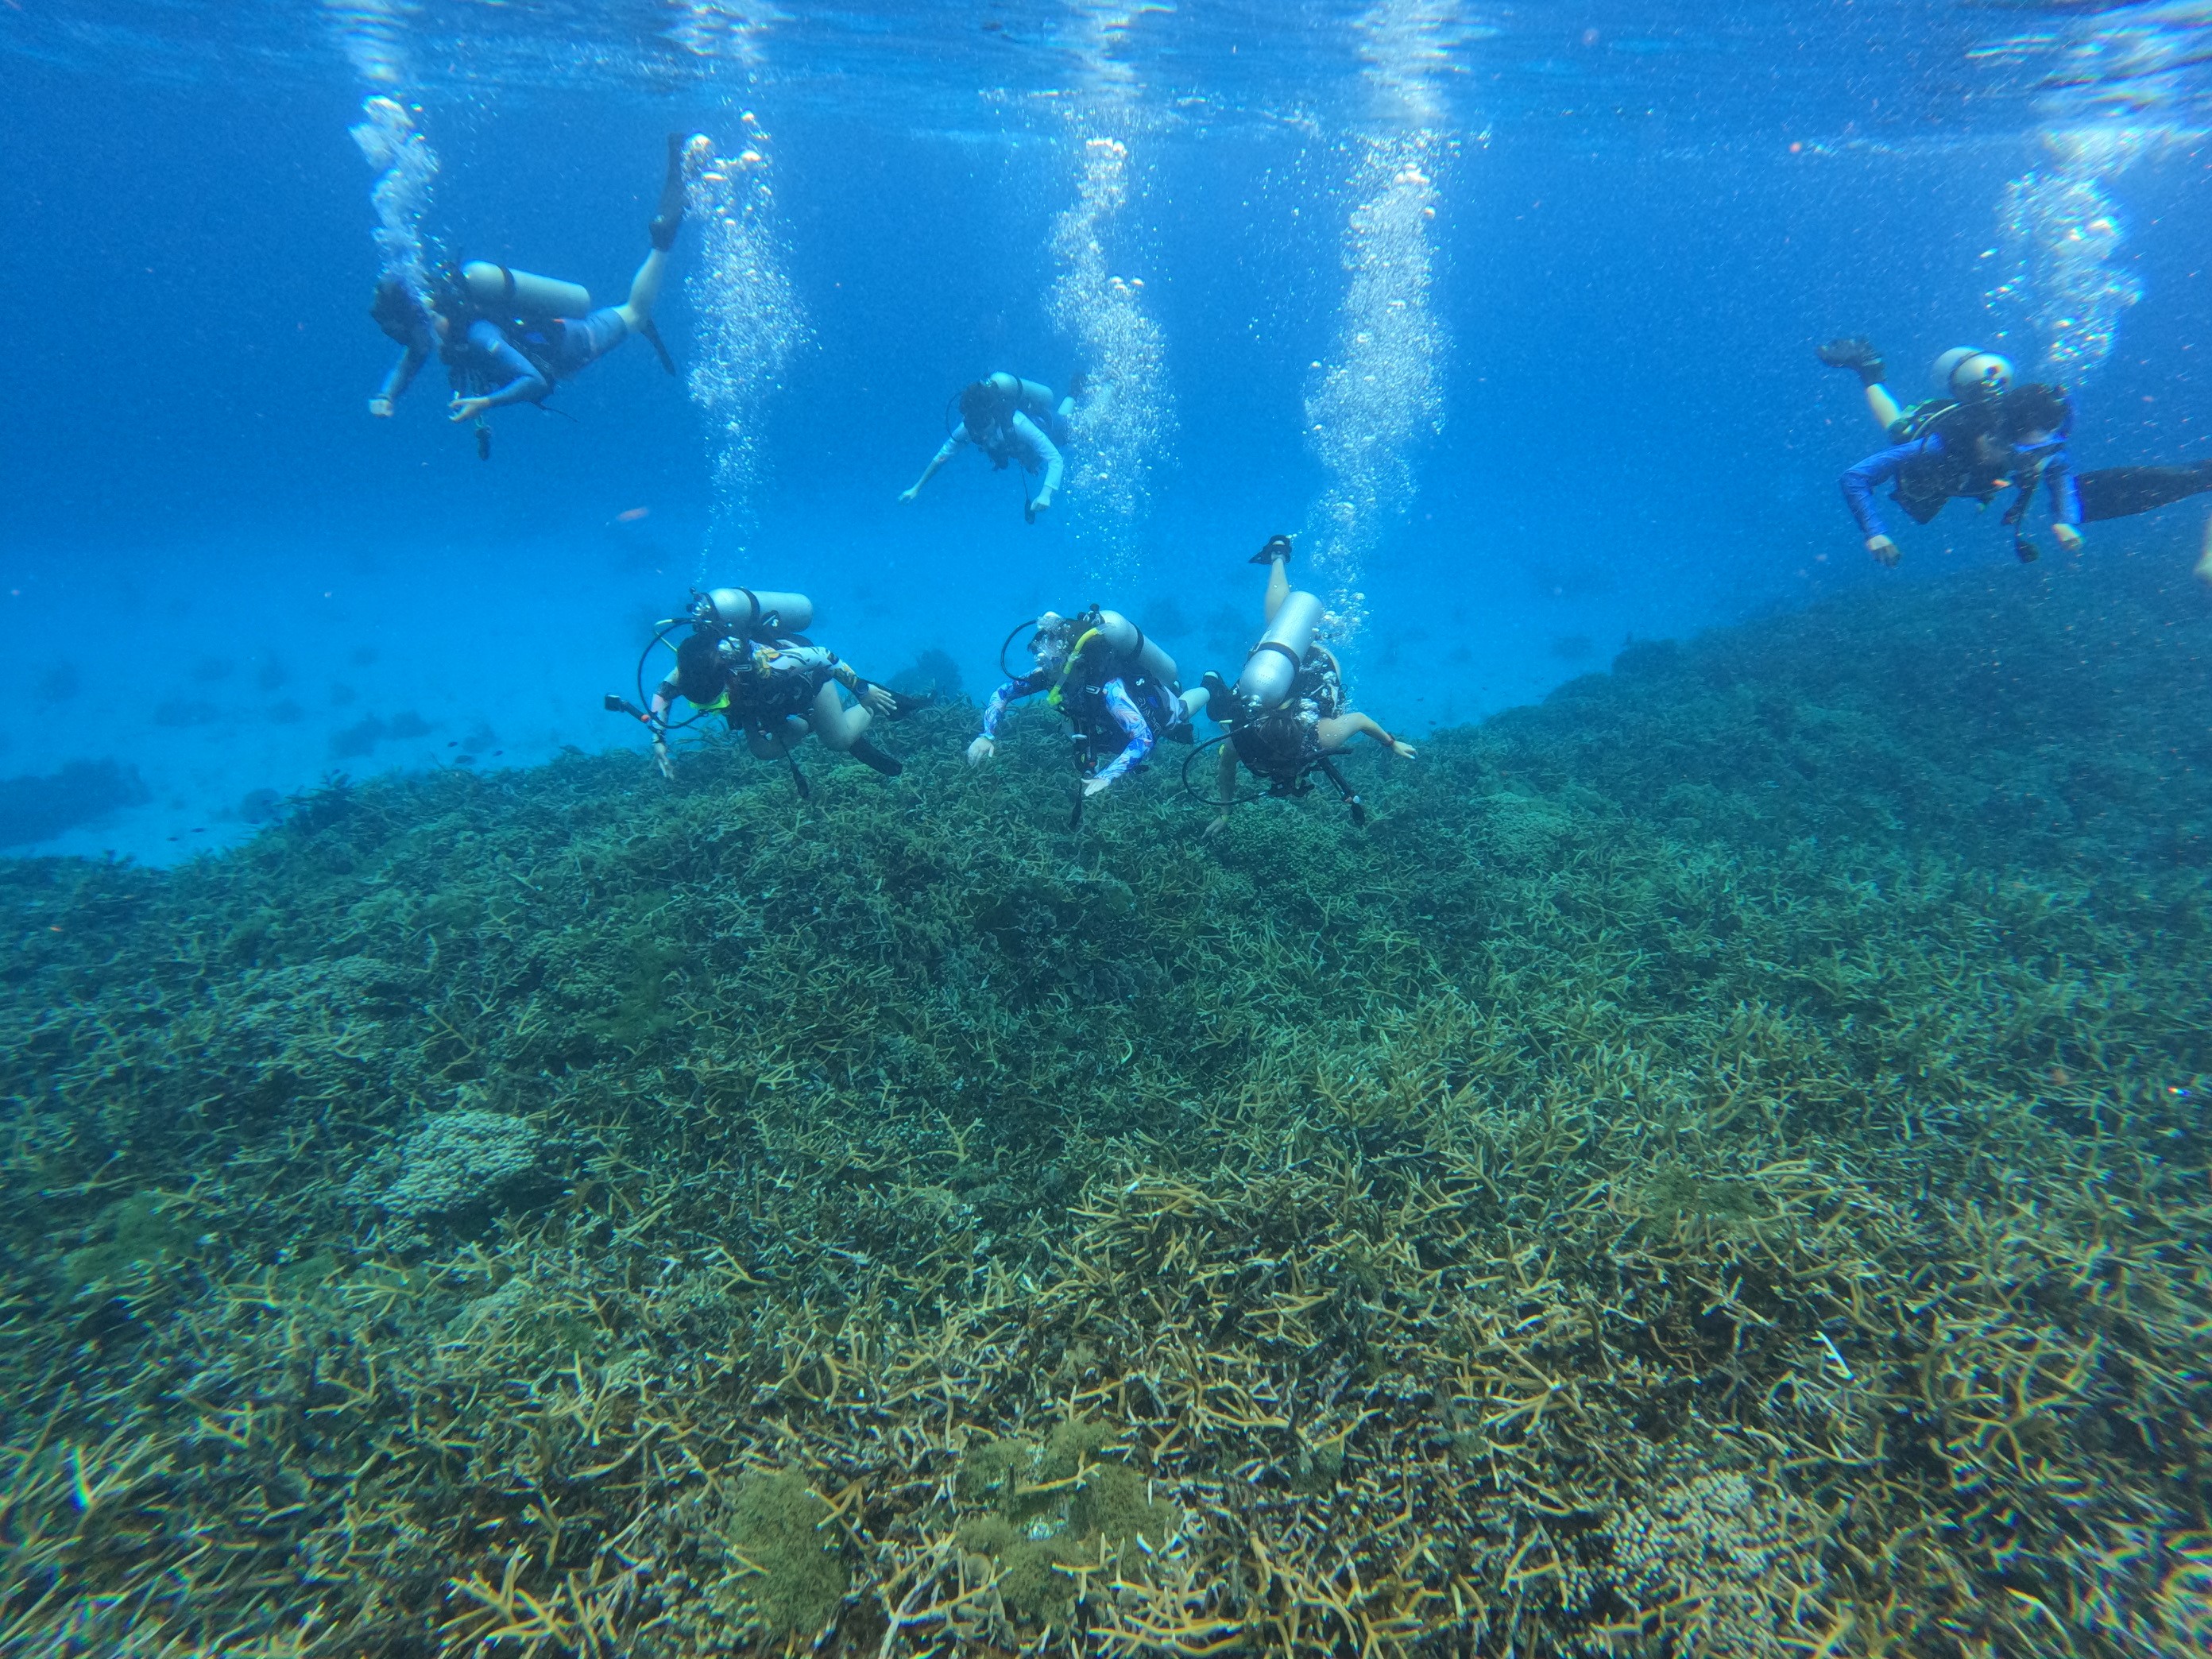 Cal Maritime oceanography cadets scuba diving at Smith Bank, Roatan, Honduras.